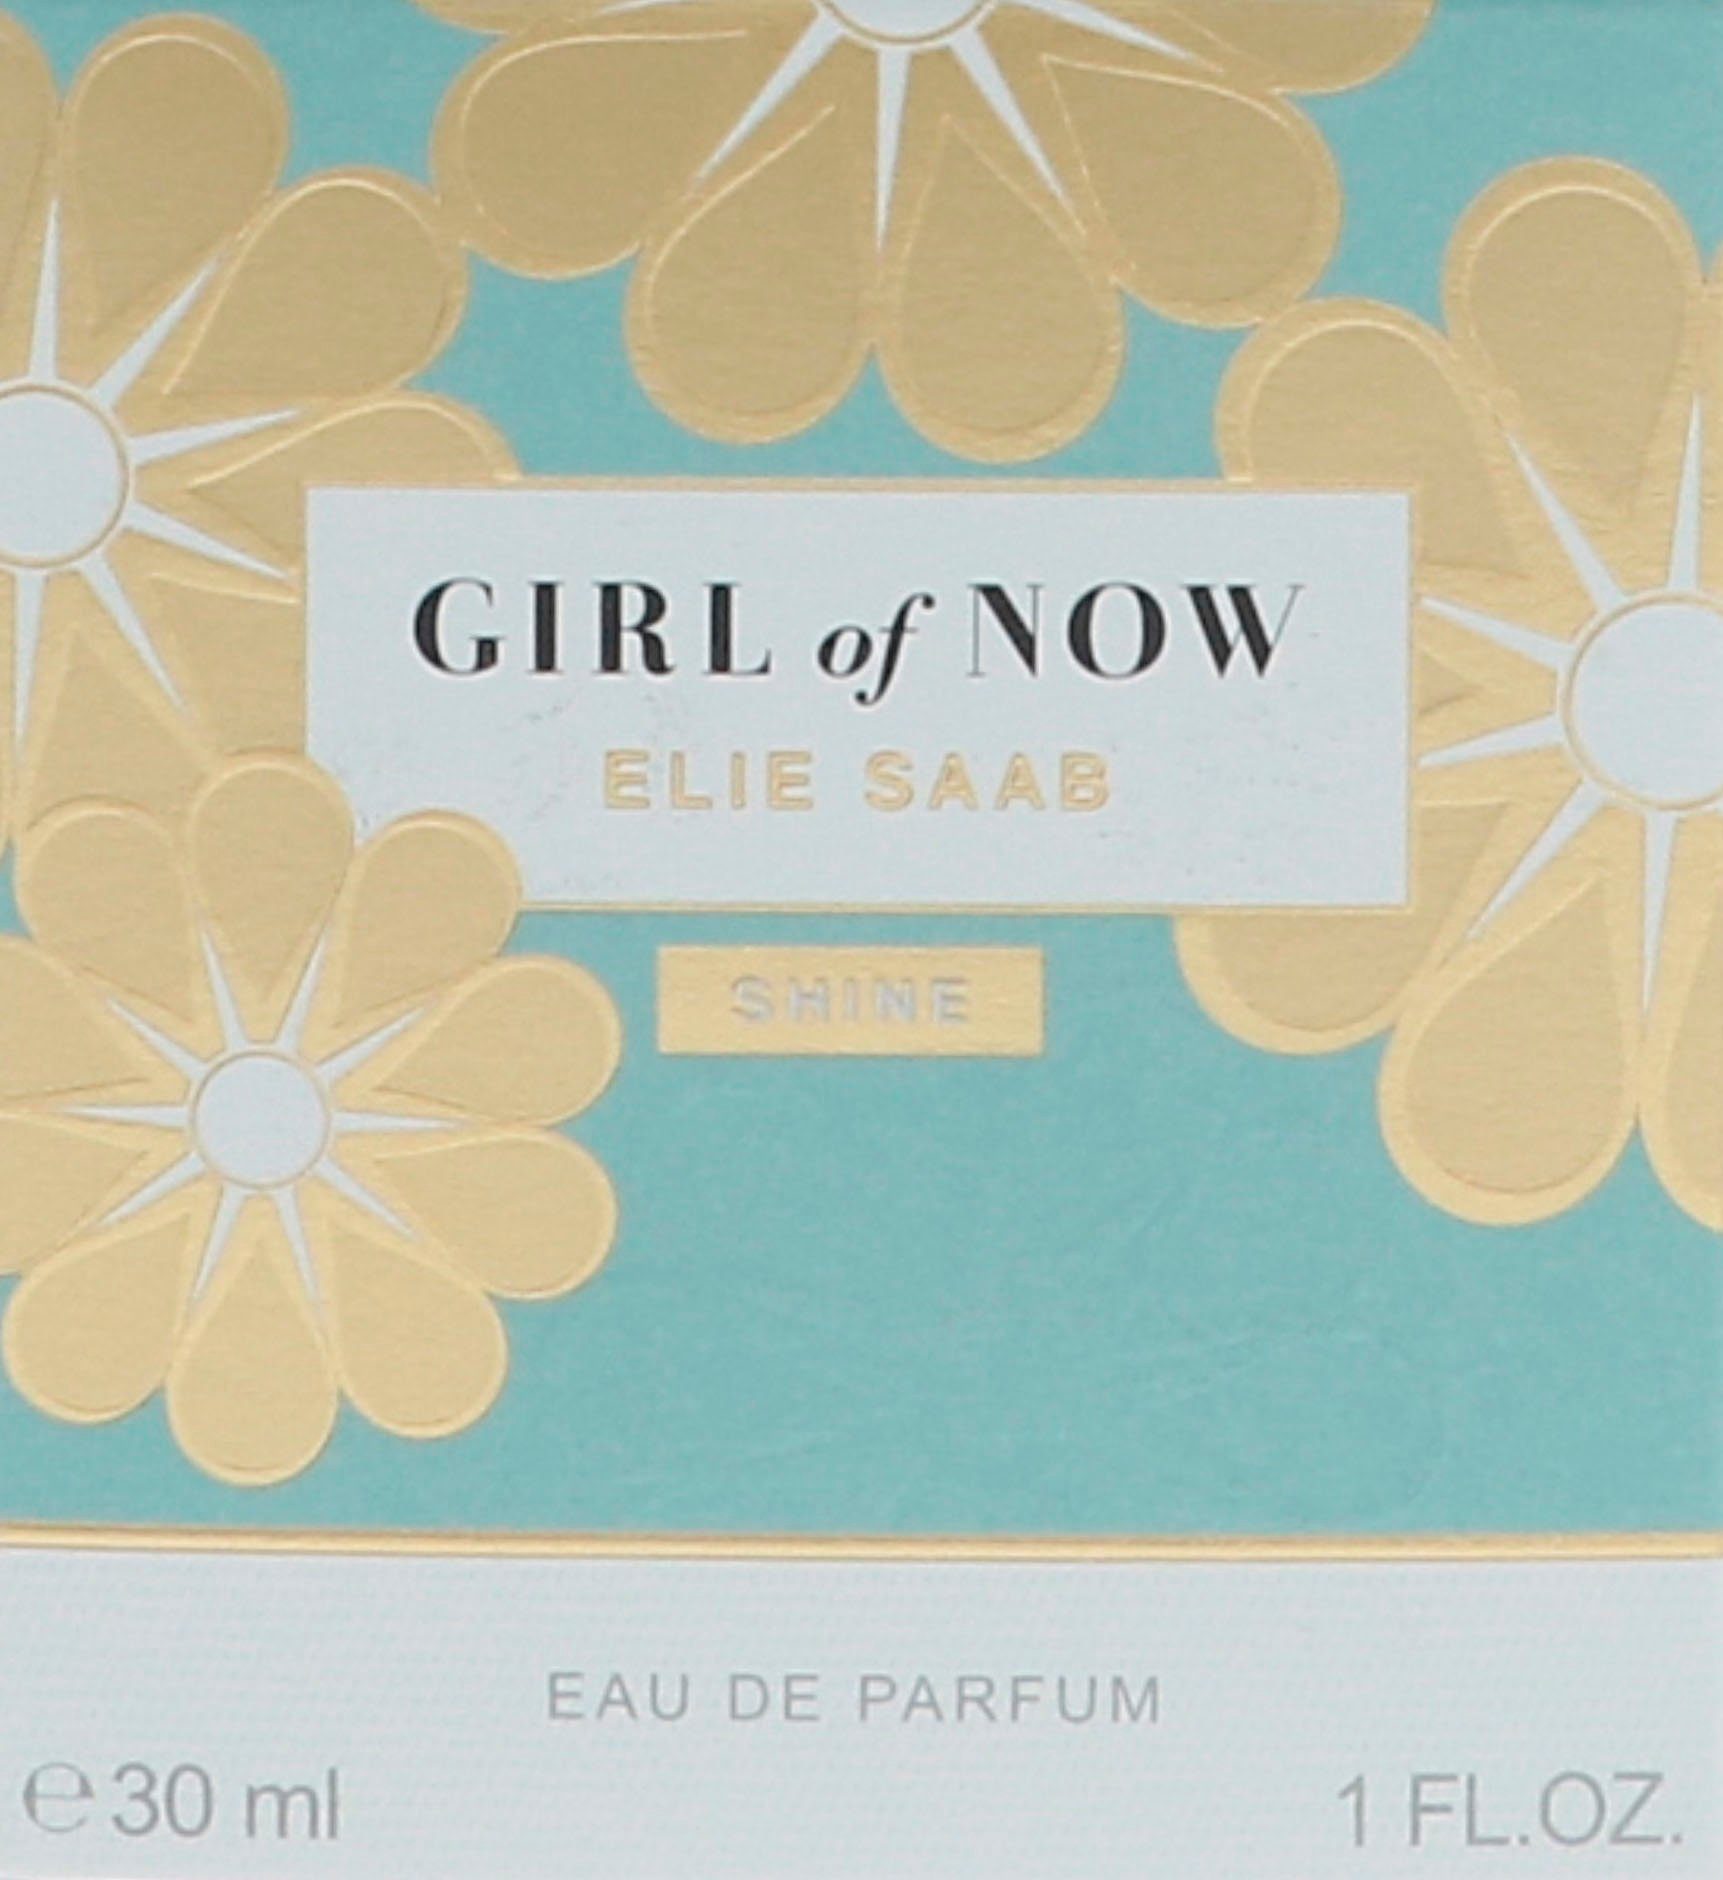 ELIE SAAB Eau Shine Parfum of Now Girl de